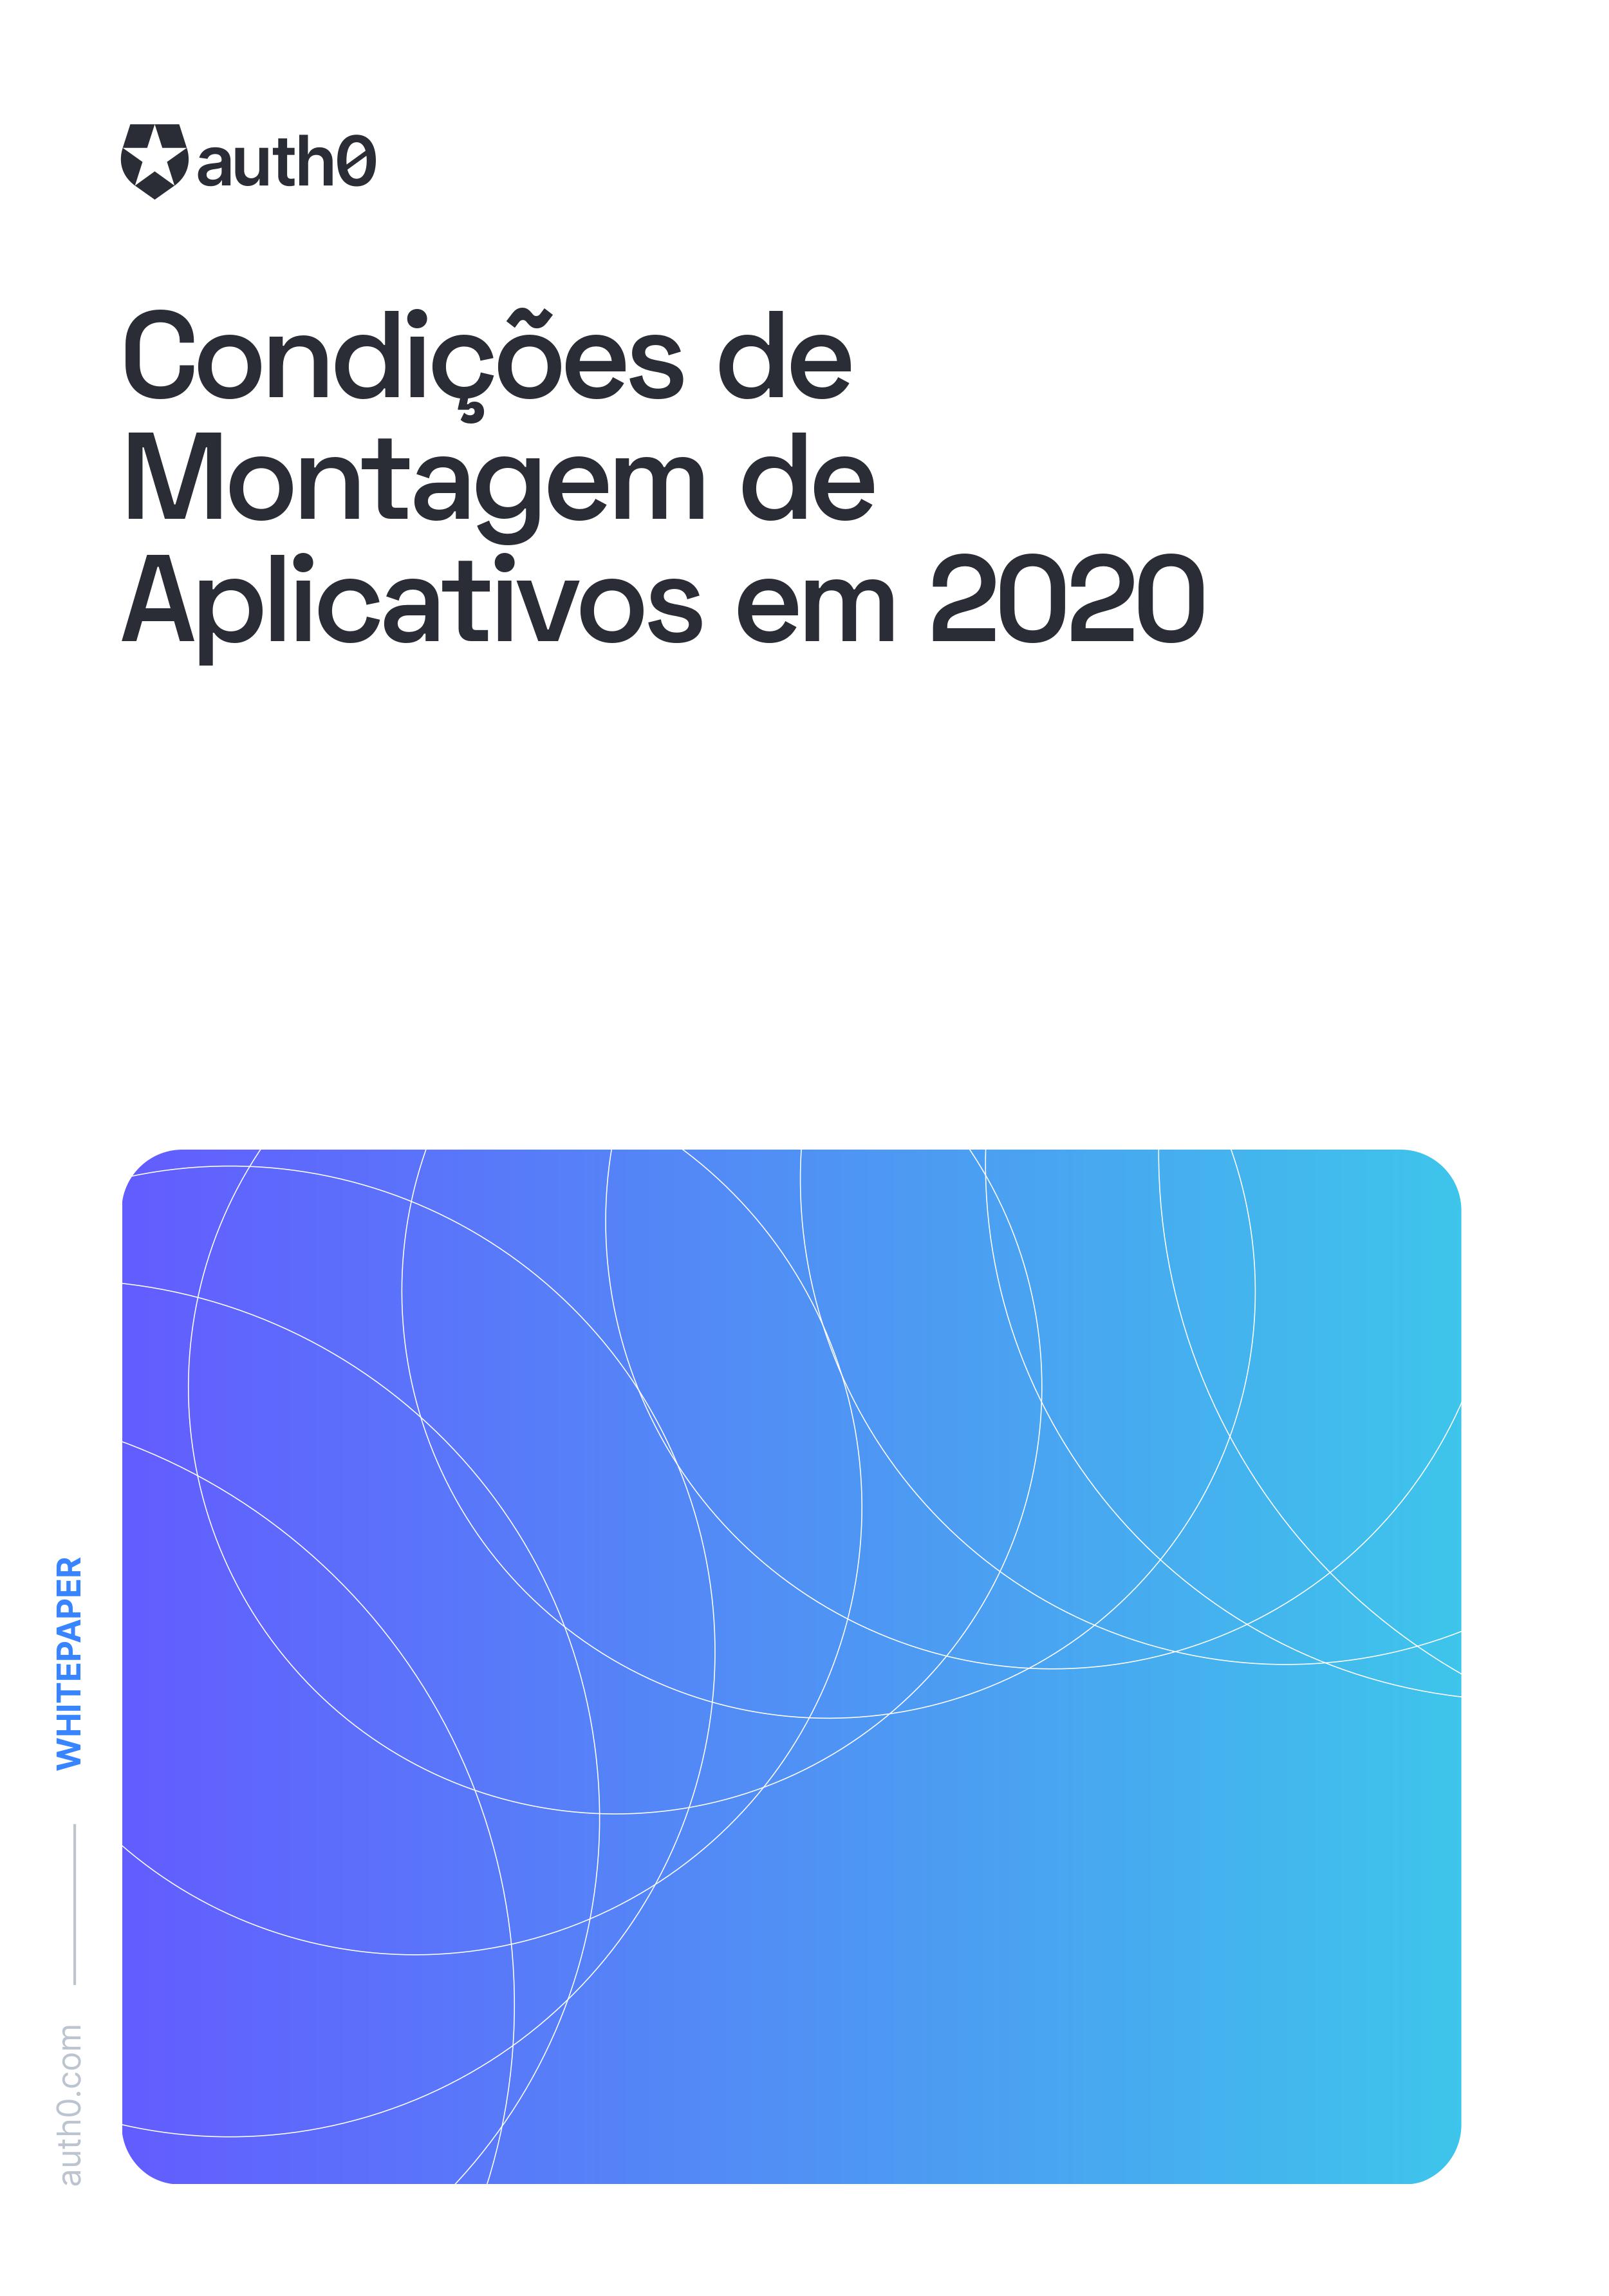 Condições de Montagem de Aplicativos em 2020